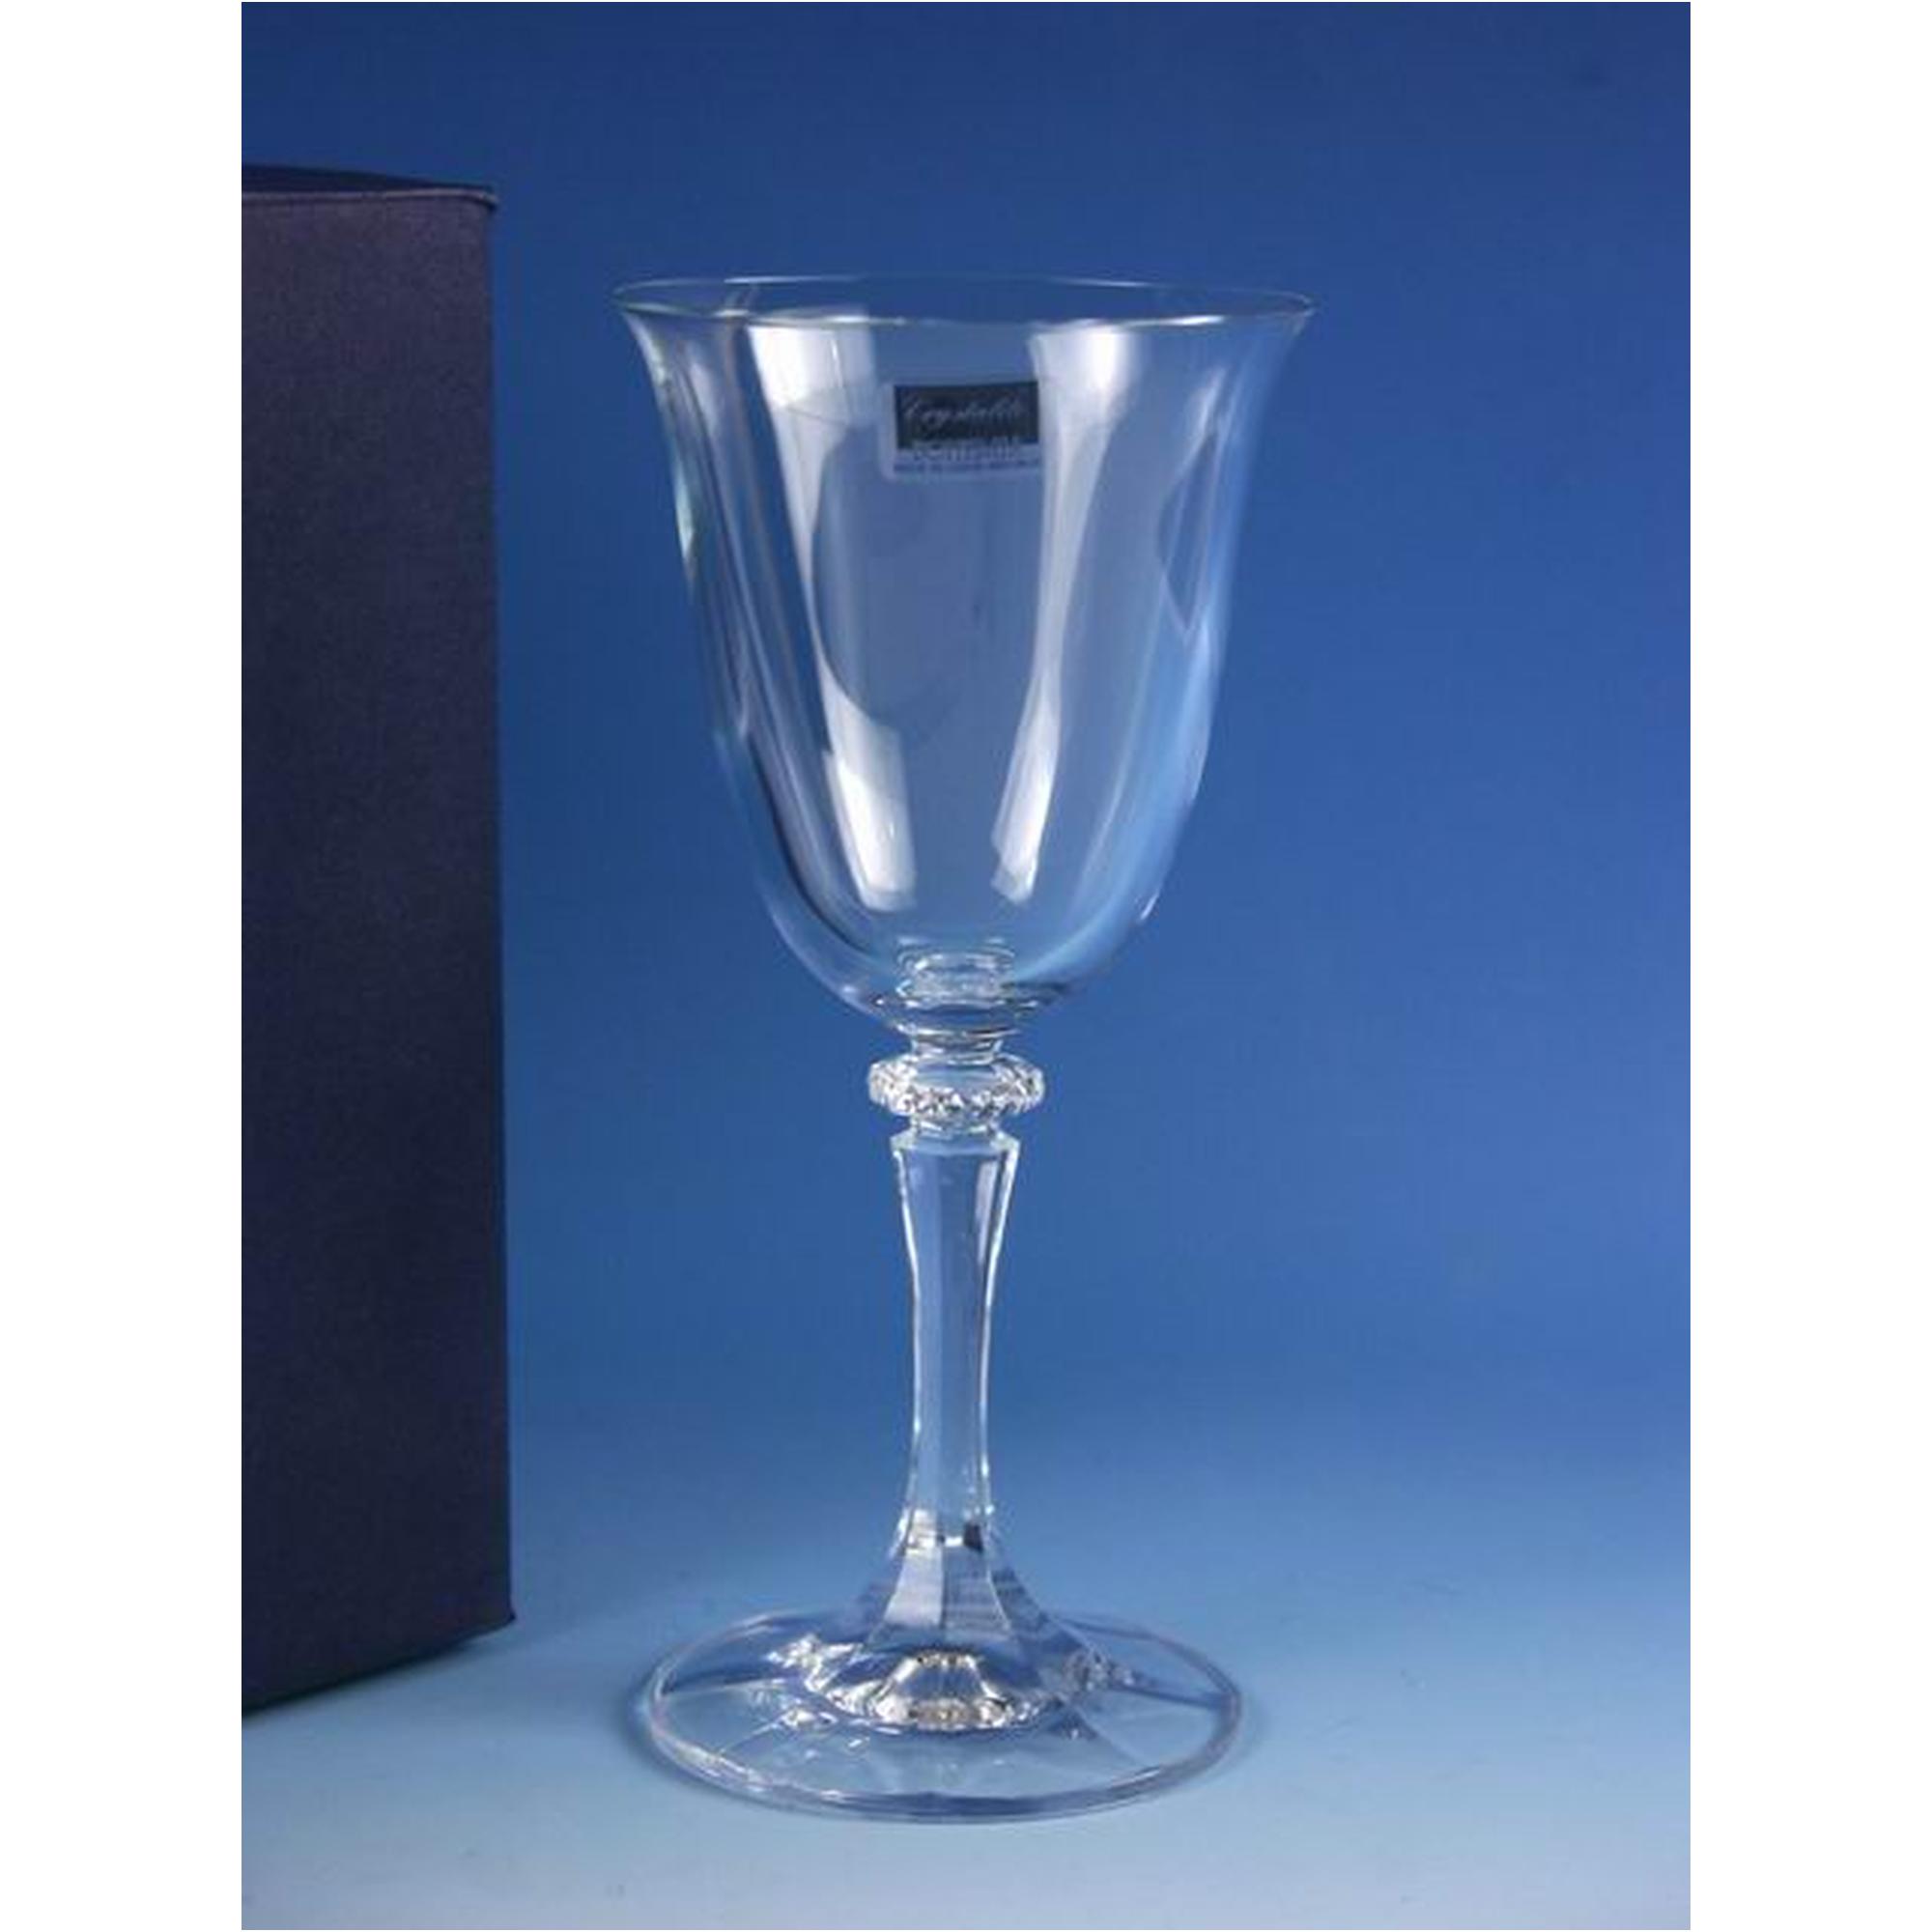 KLEOPATRA WINE GLASS E6 250ML - 375-10033250